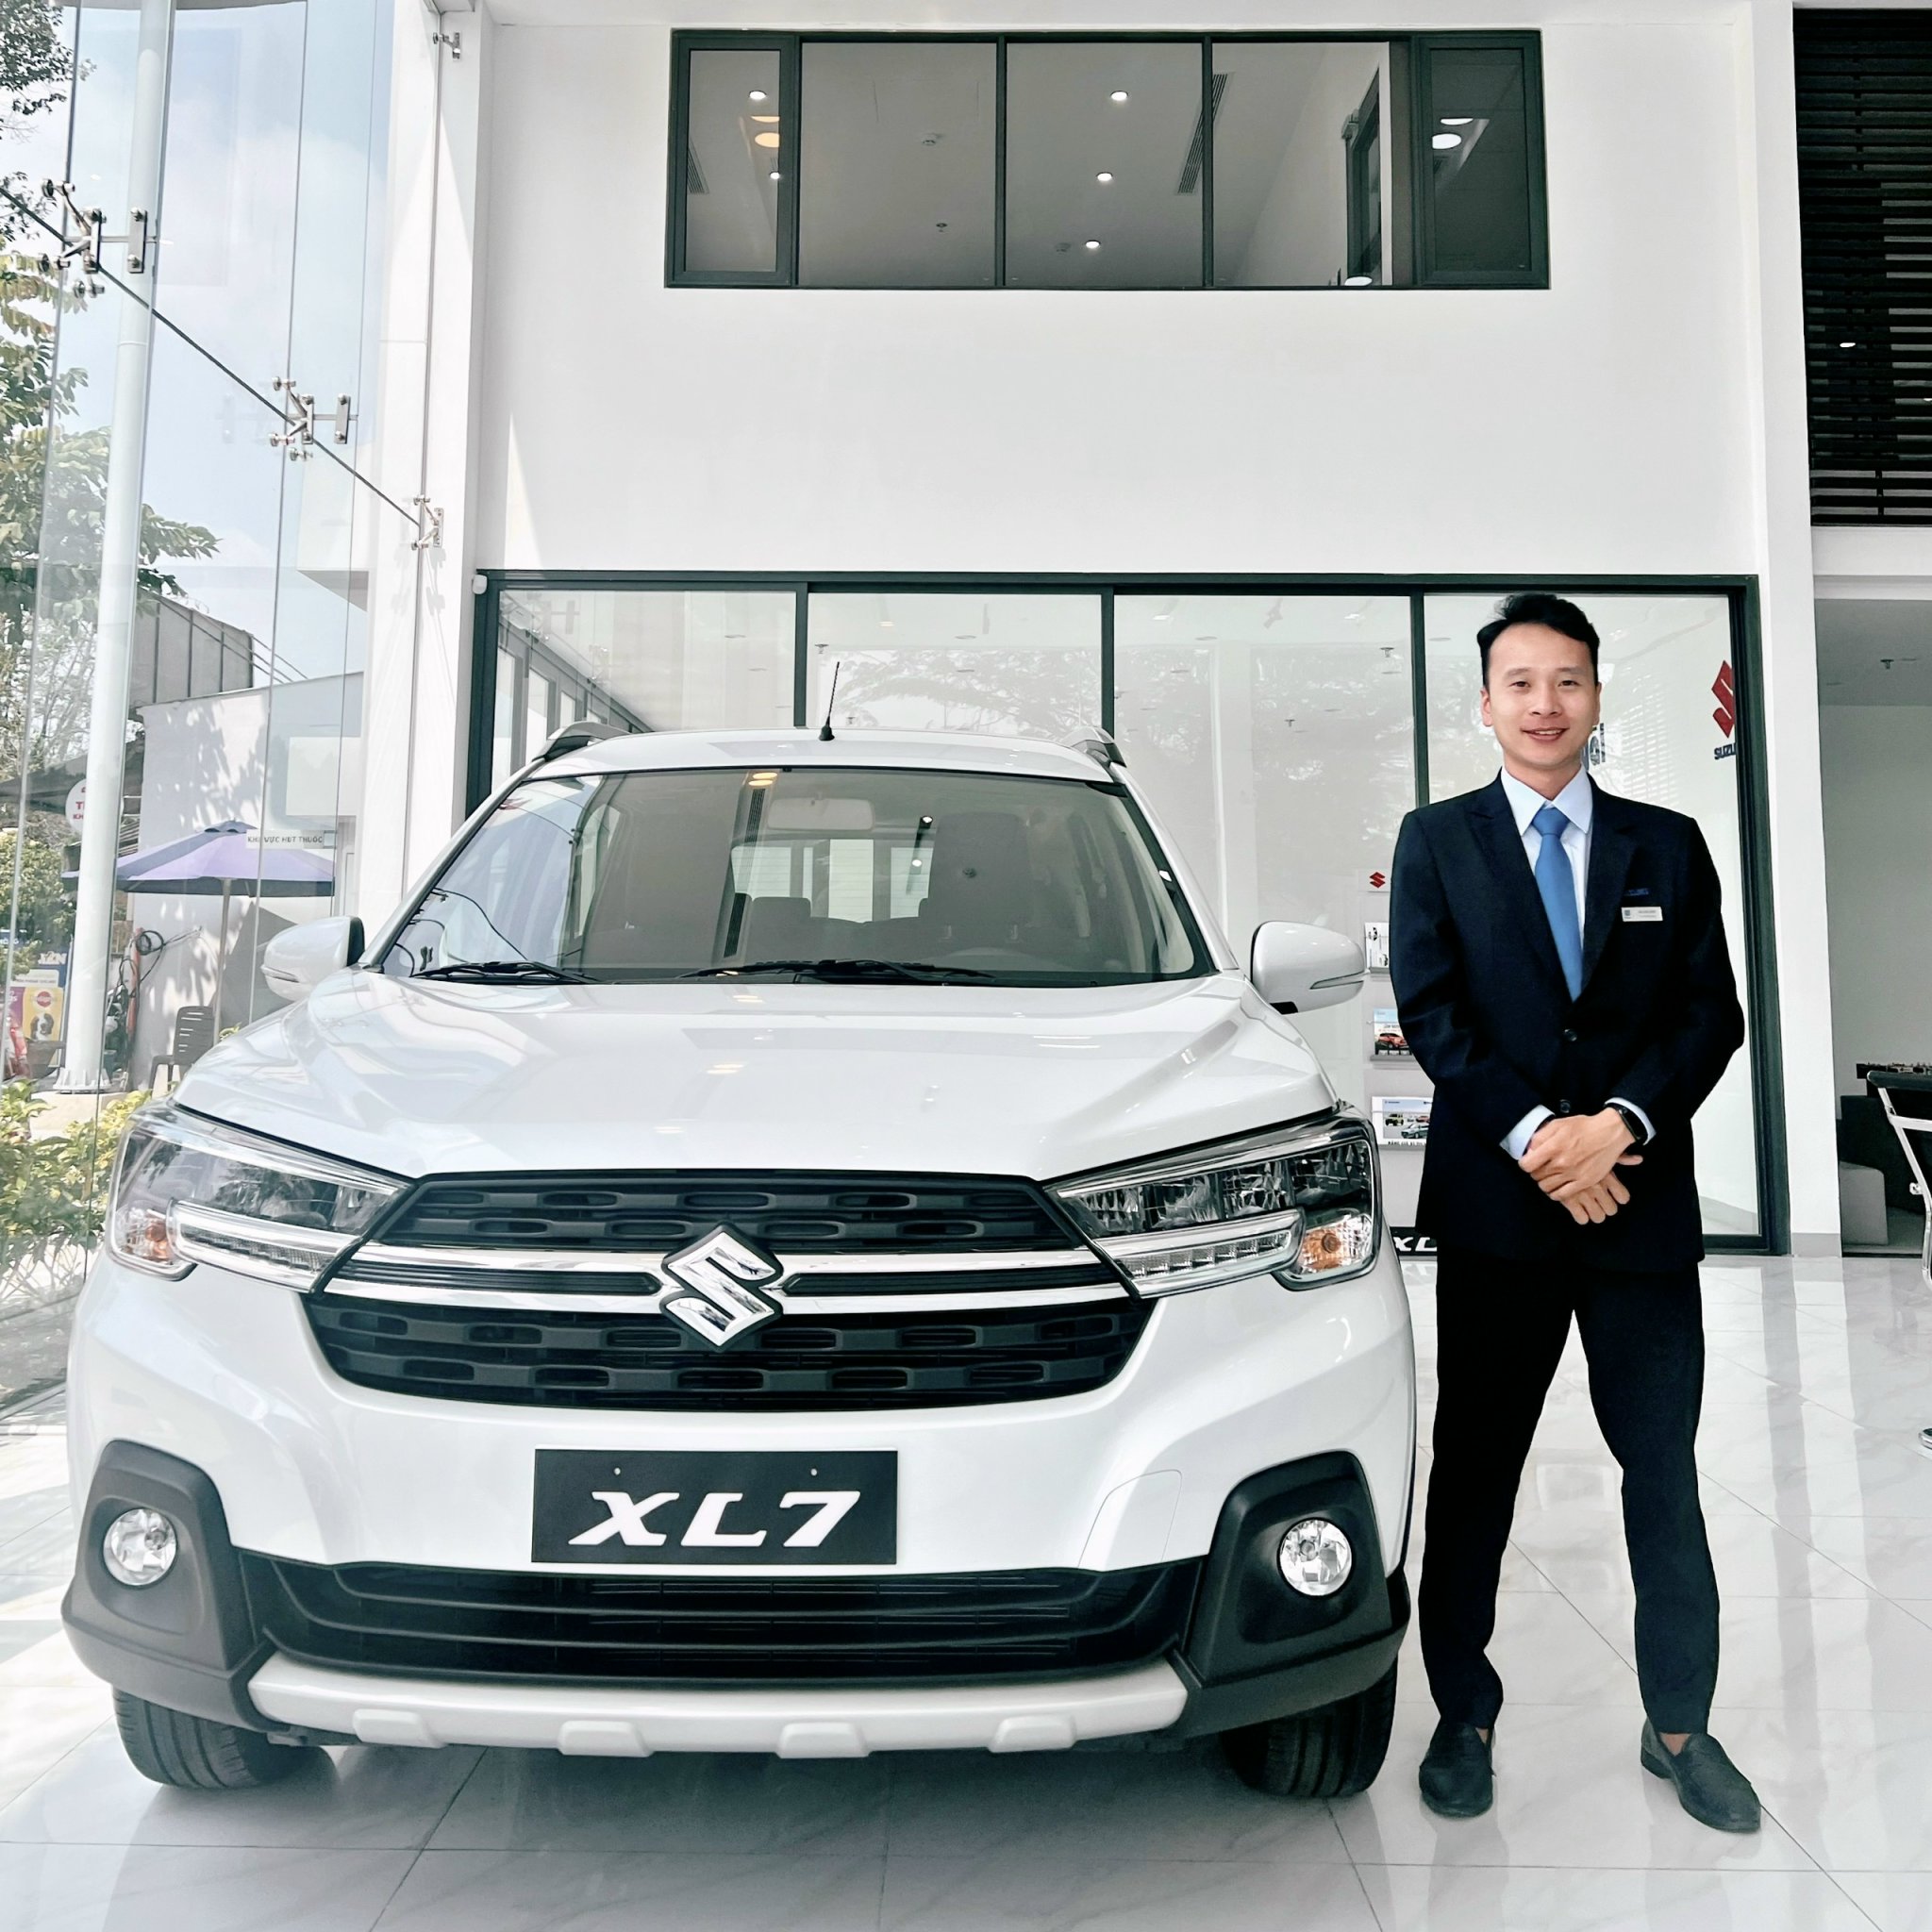 Hiện nay, xe Suzuki XL7 được nhập khẩu nguyên chiếc từ Indonesia. Nhà máy sản xuất XL7 đặt tại Cikarang, Bekasi, Indonesia và được vận chuyển về Việt Nam qua đường biển.